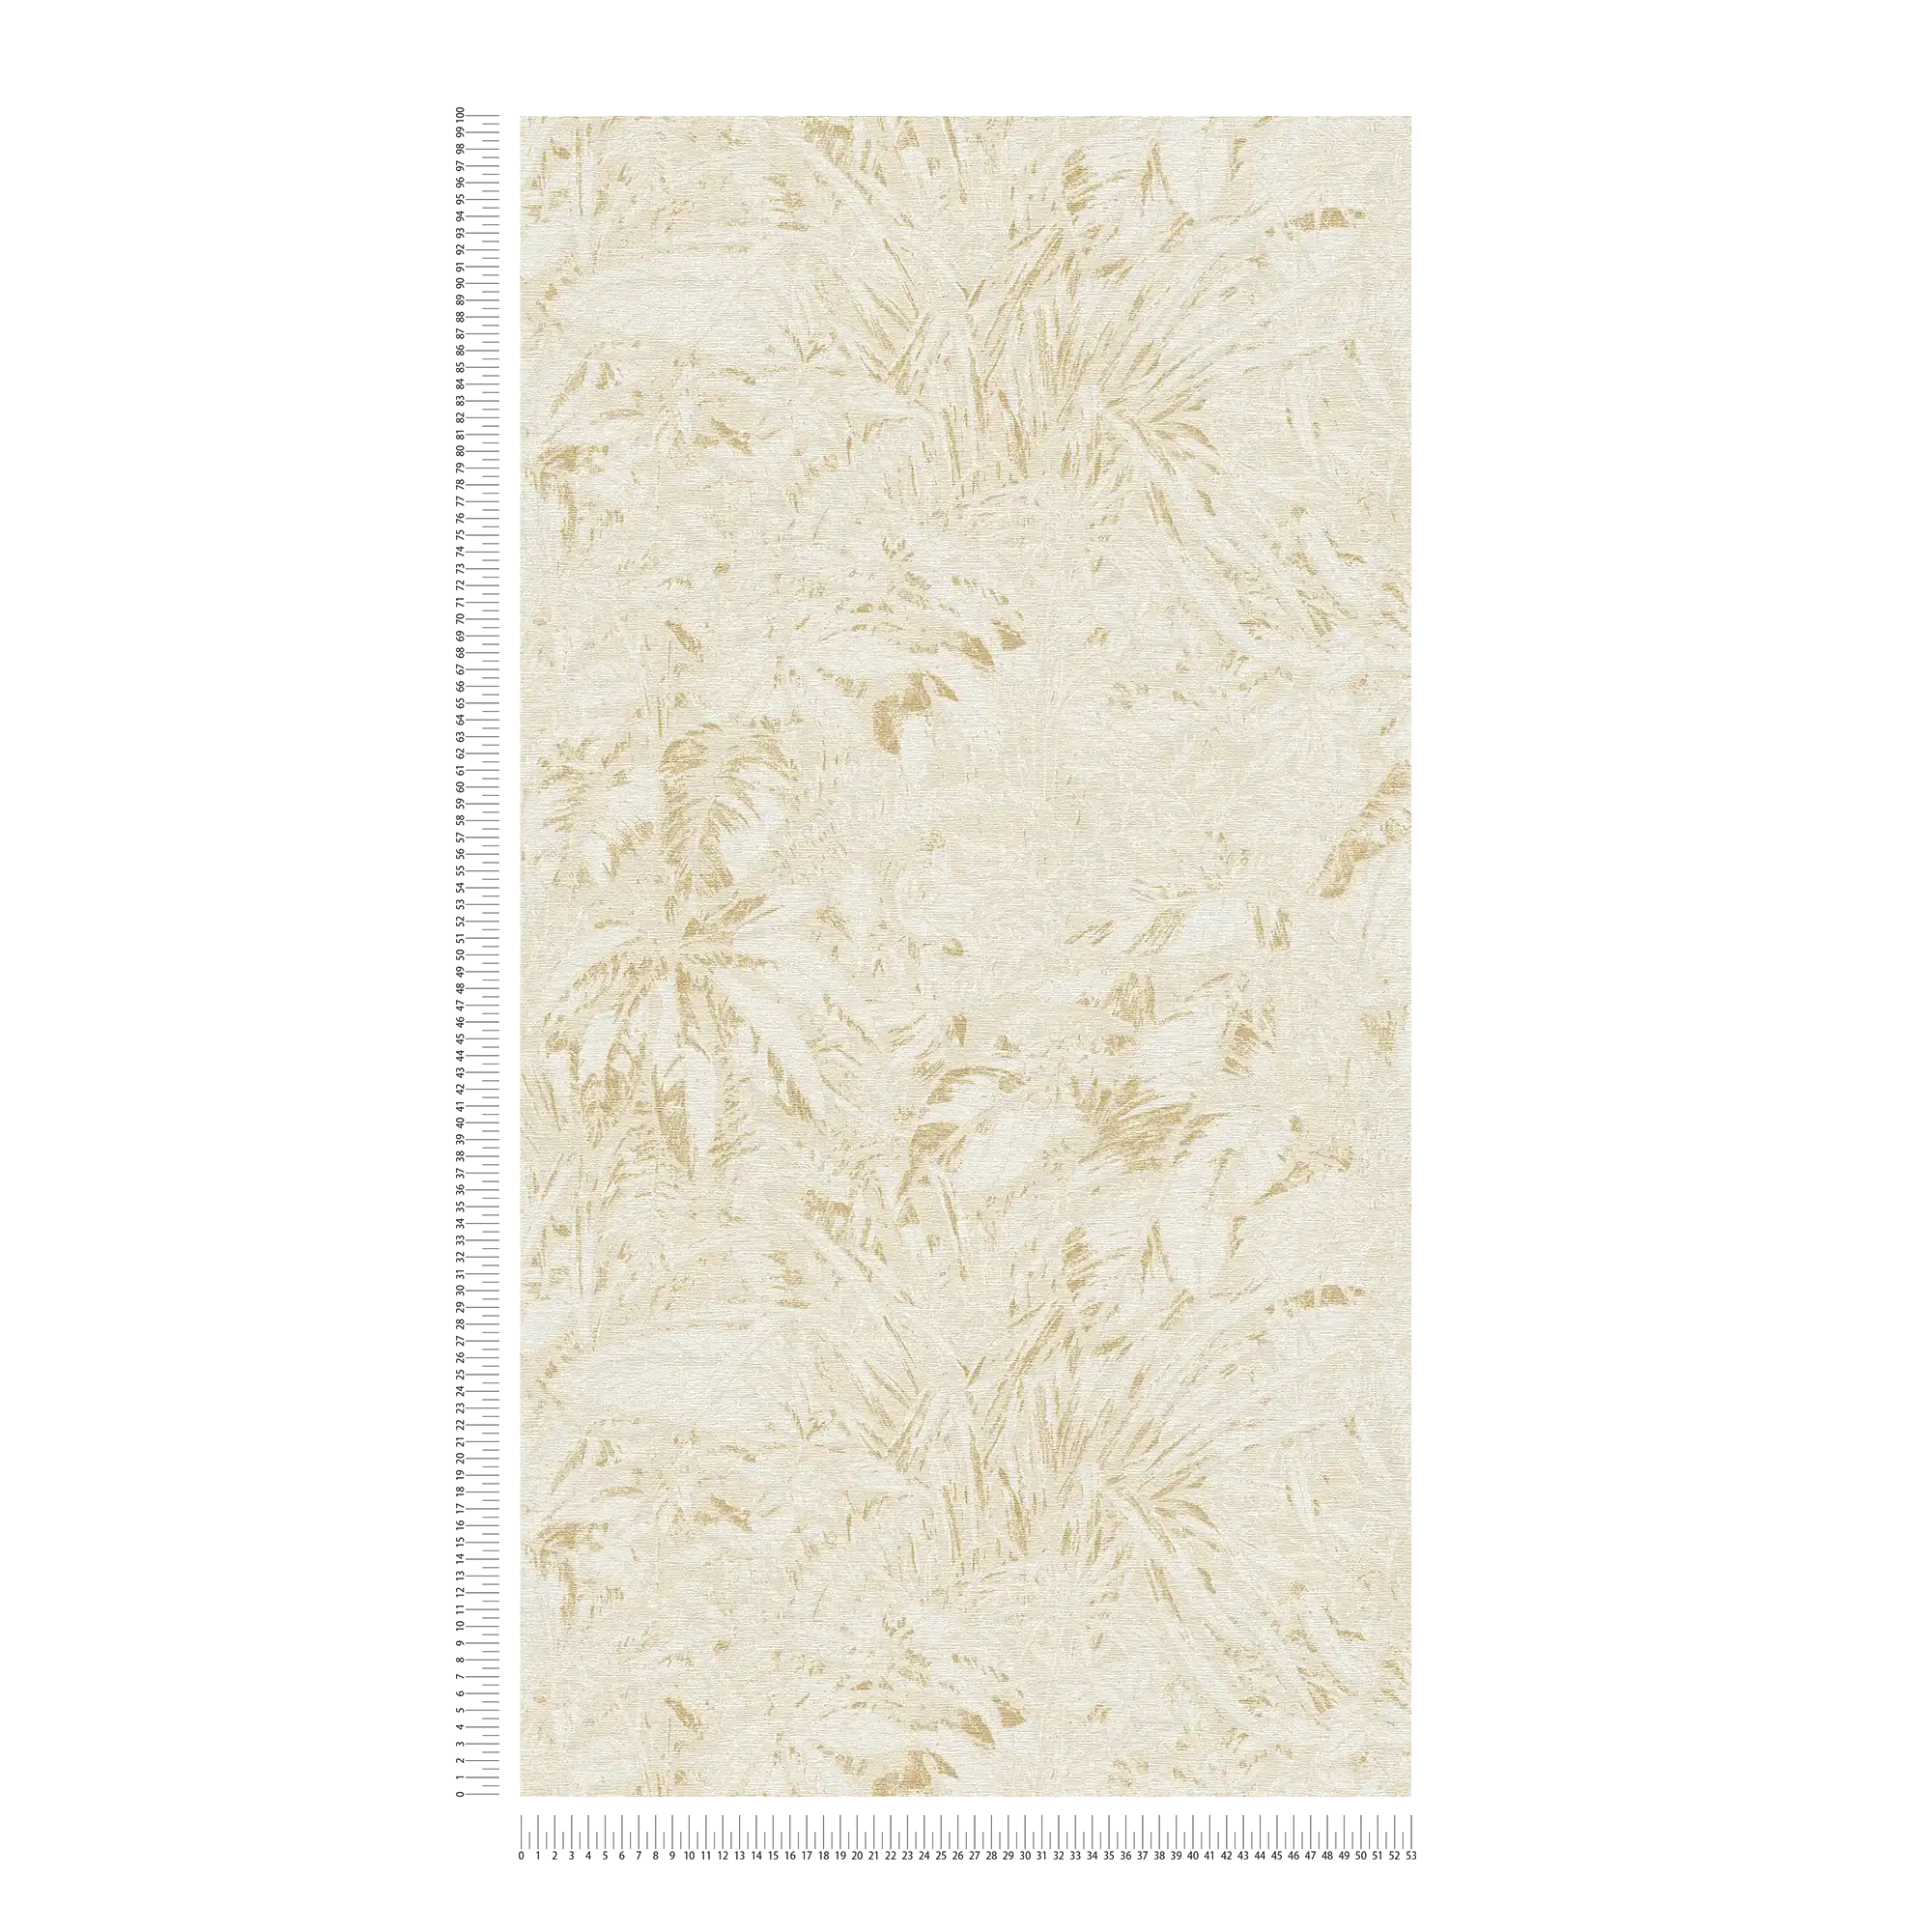             Jungle behang in zachte kleuren met bladmotief - beige, wit, goud
        